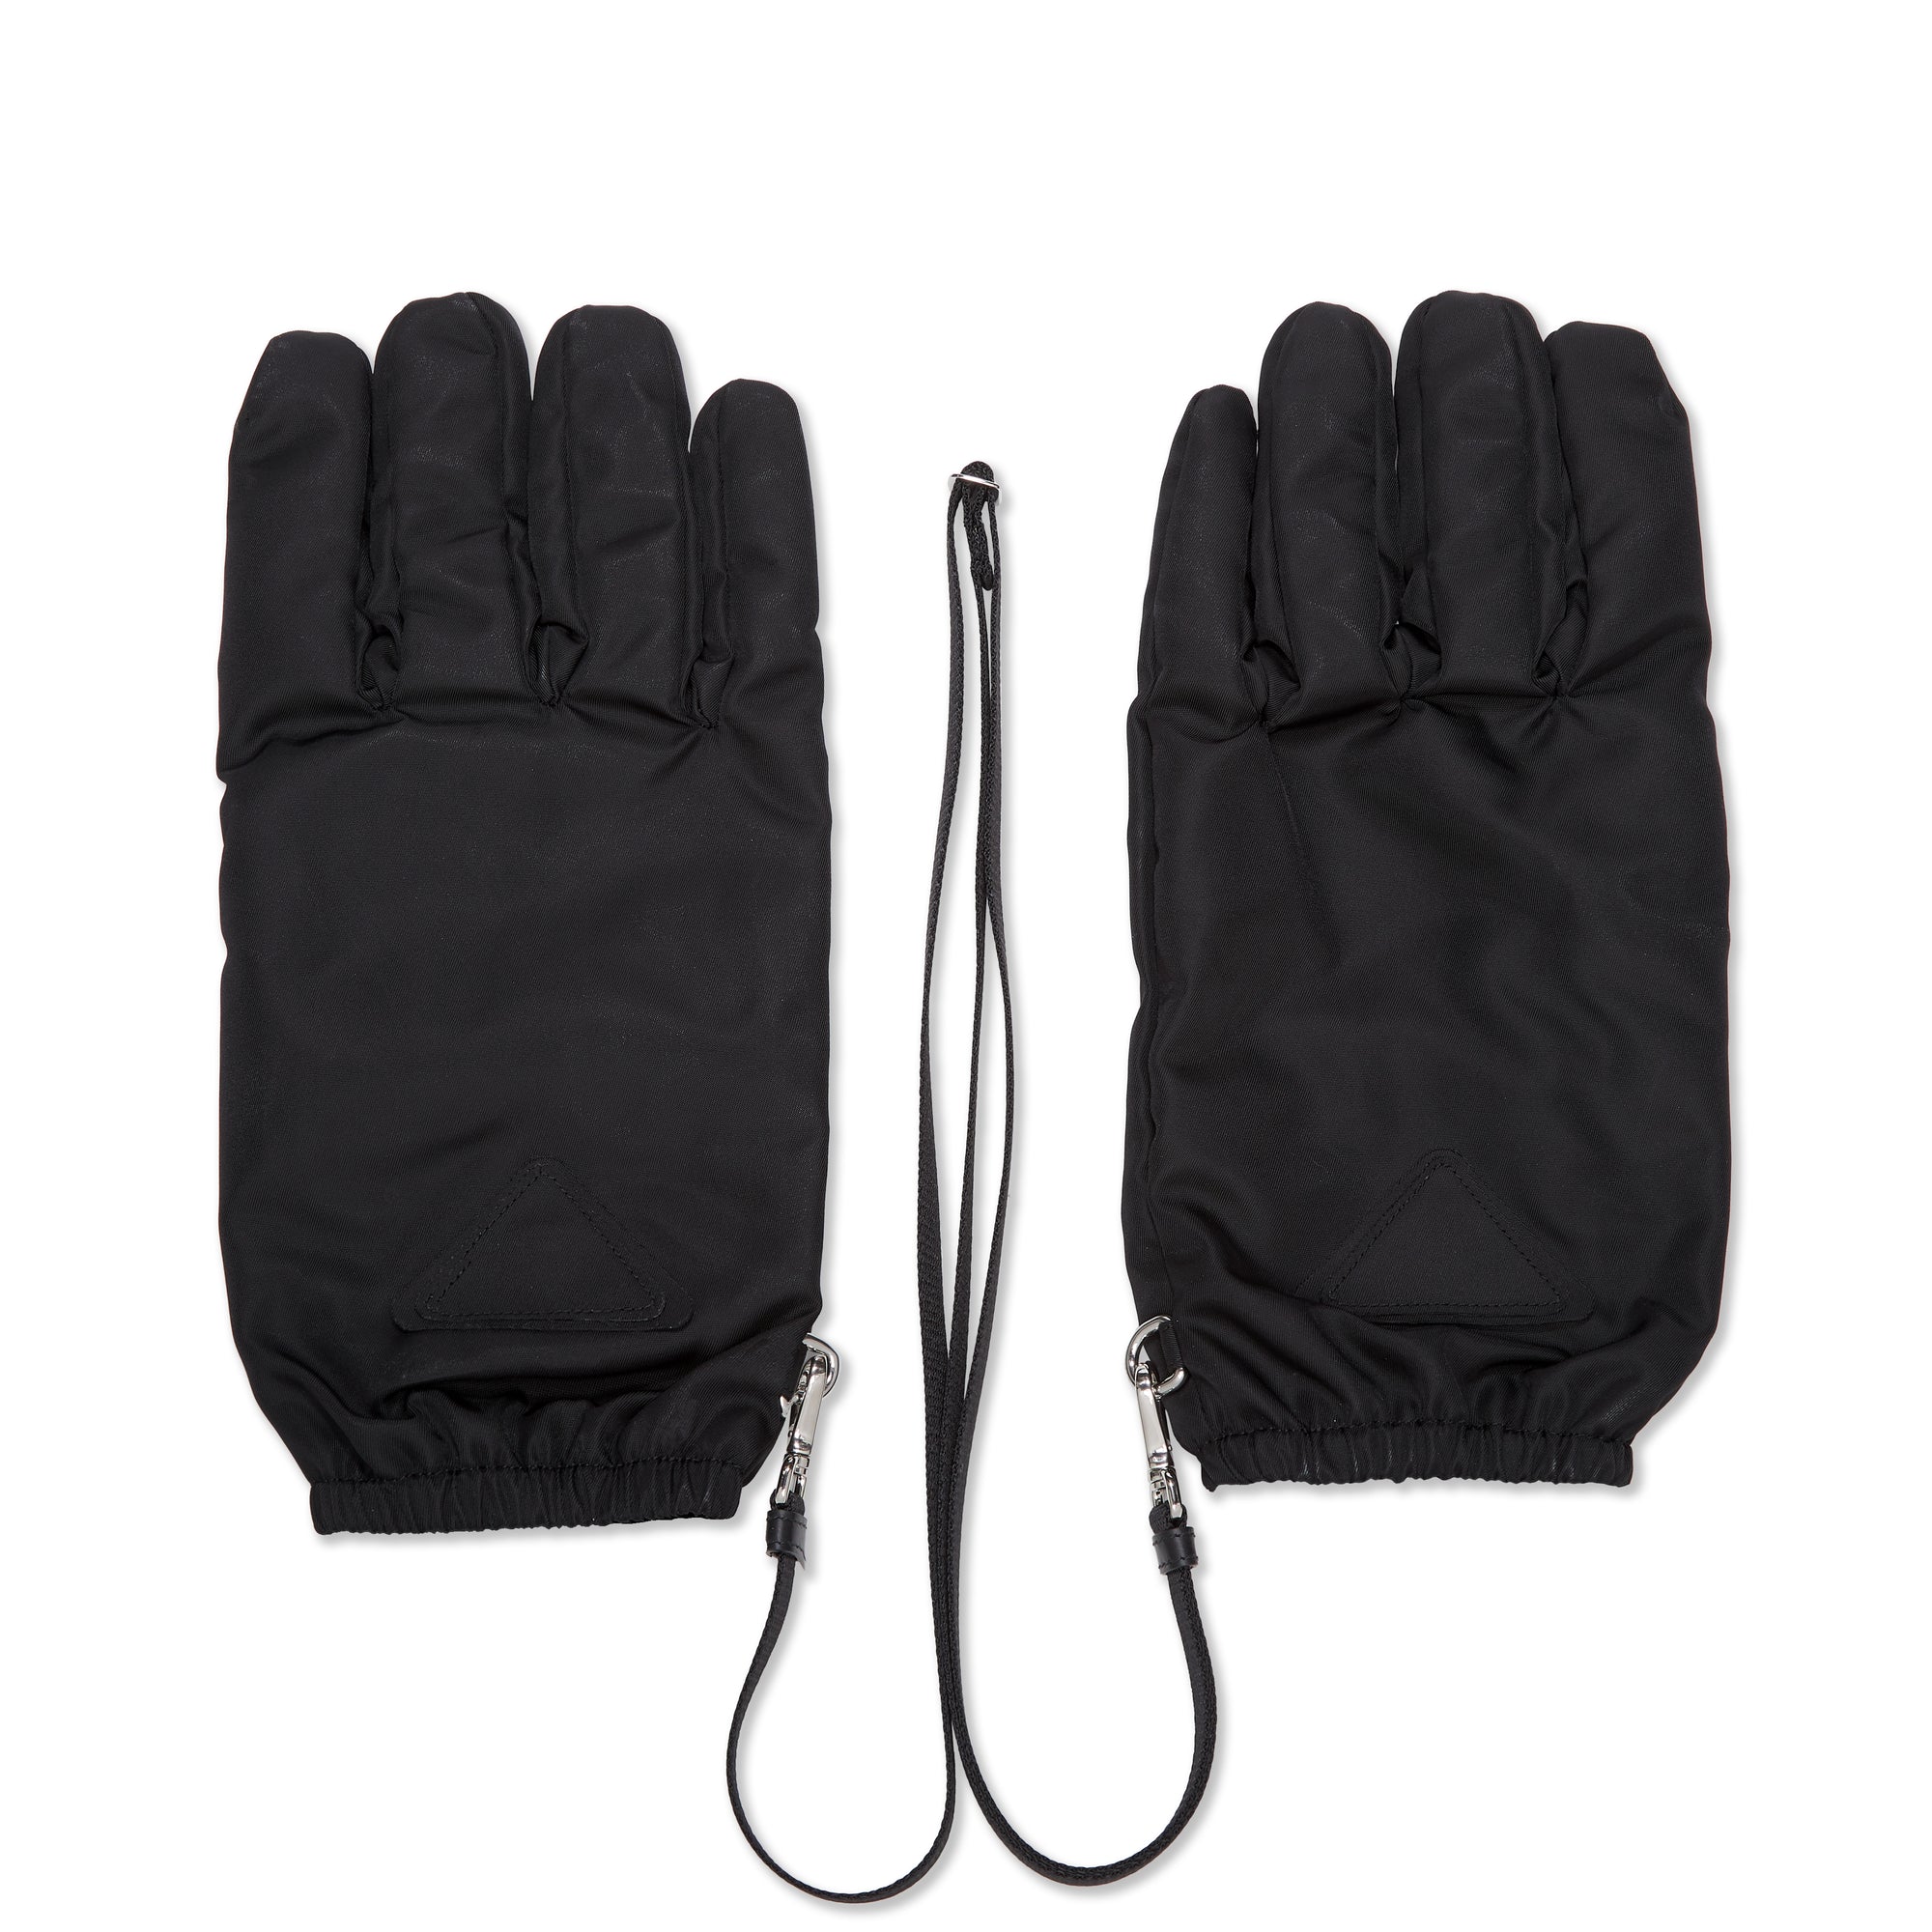 Prada - Men's Gloves - (Black) view 1